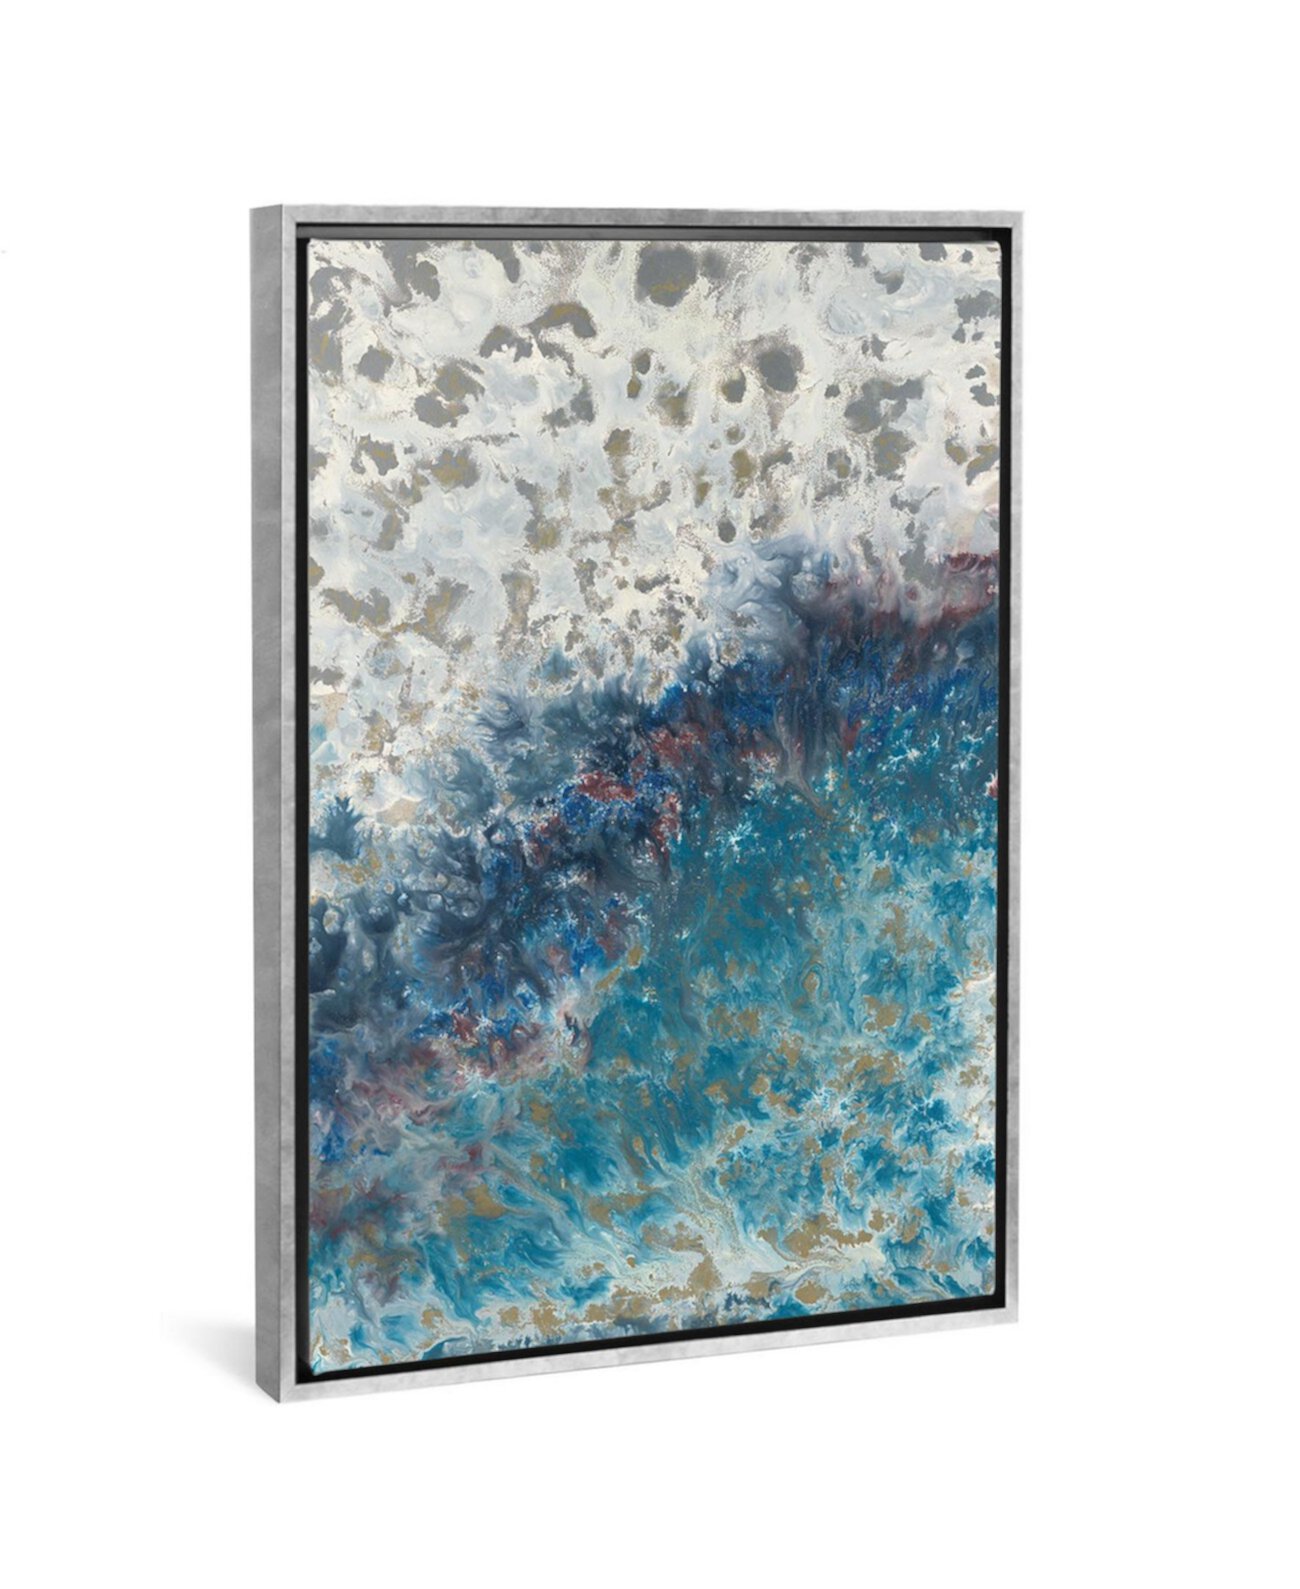 Картина на холсте Блейкли Беринга «Прилив» в обертке галереи - 40 дюймов x 26 дюймов x 0,75 дюйма ICanvas